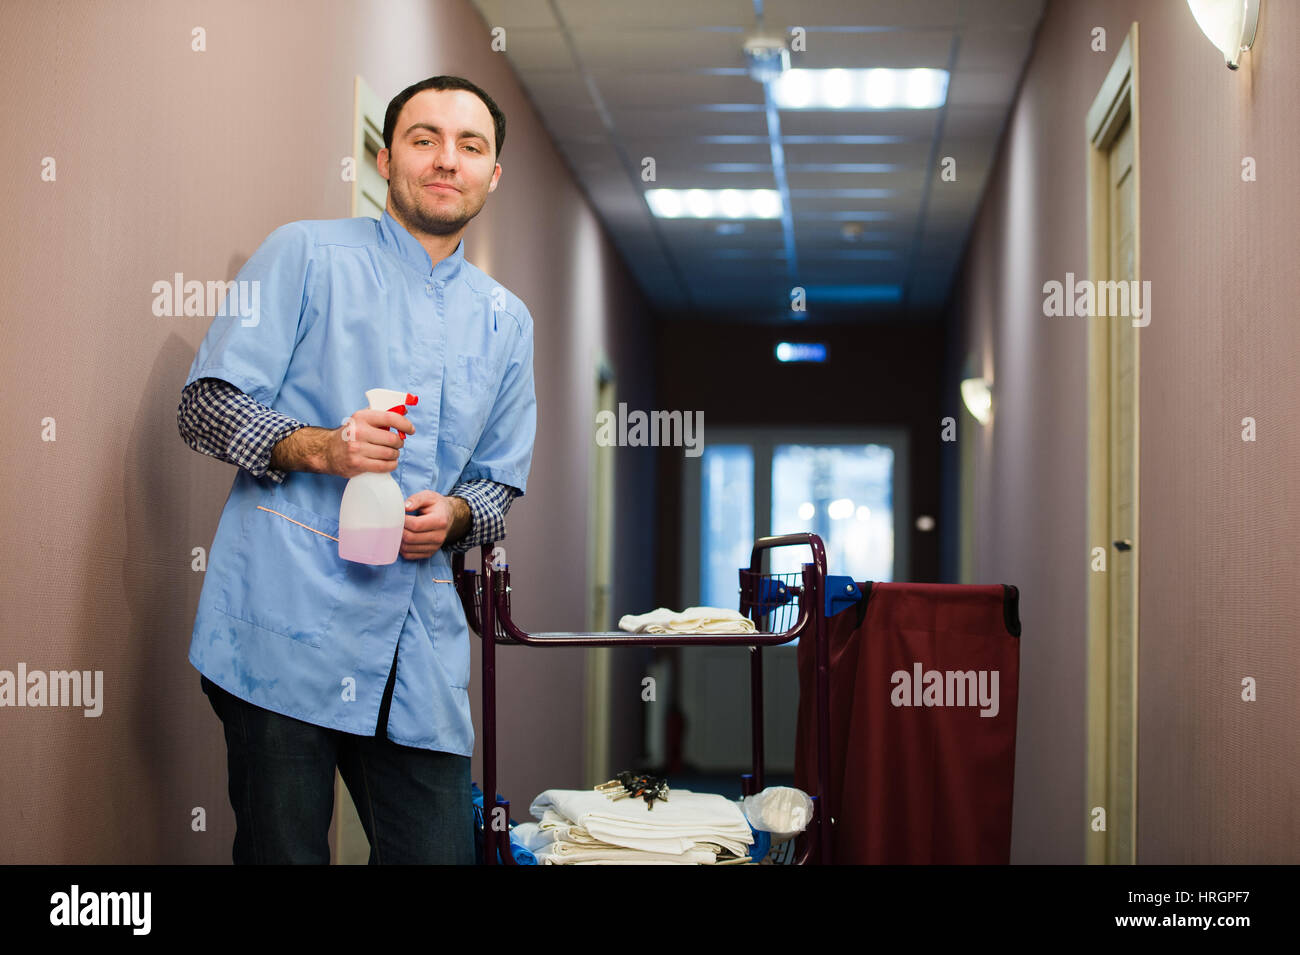 Nettoyage de l'homme hôtel hall porte manteau bleu Banque D'Images